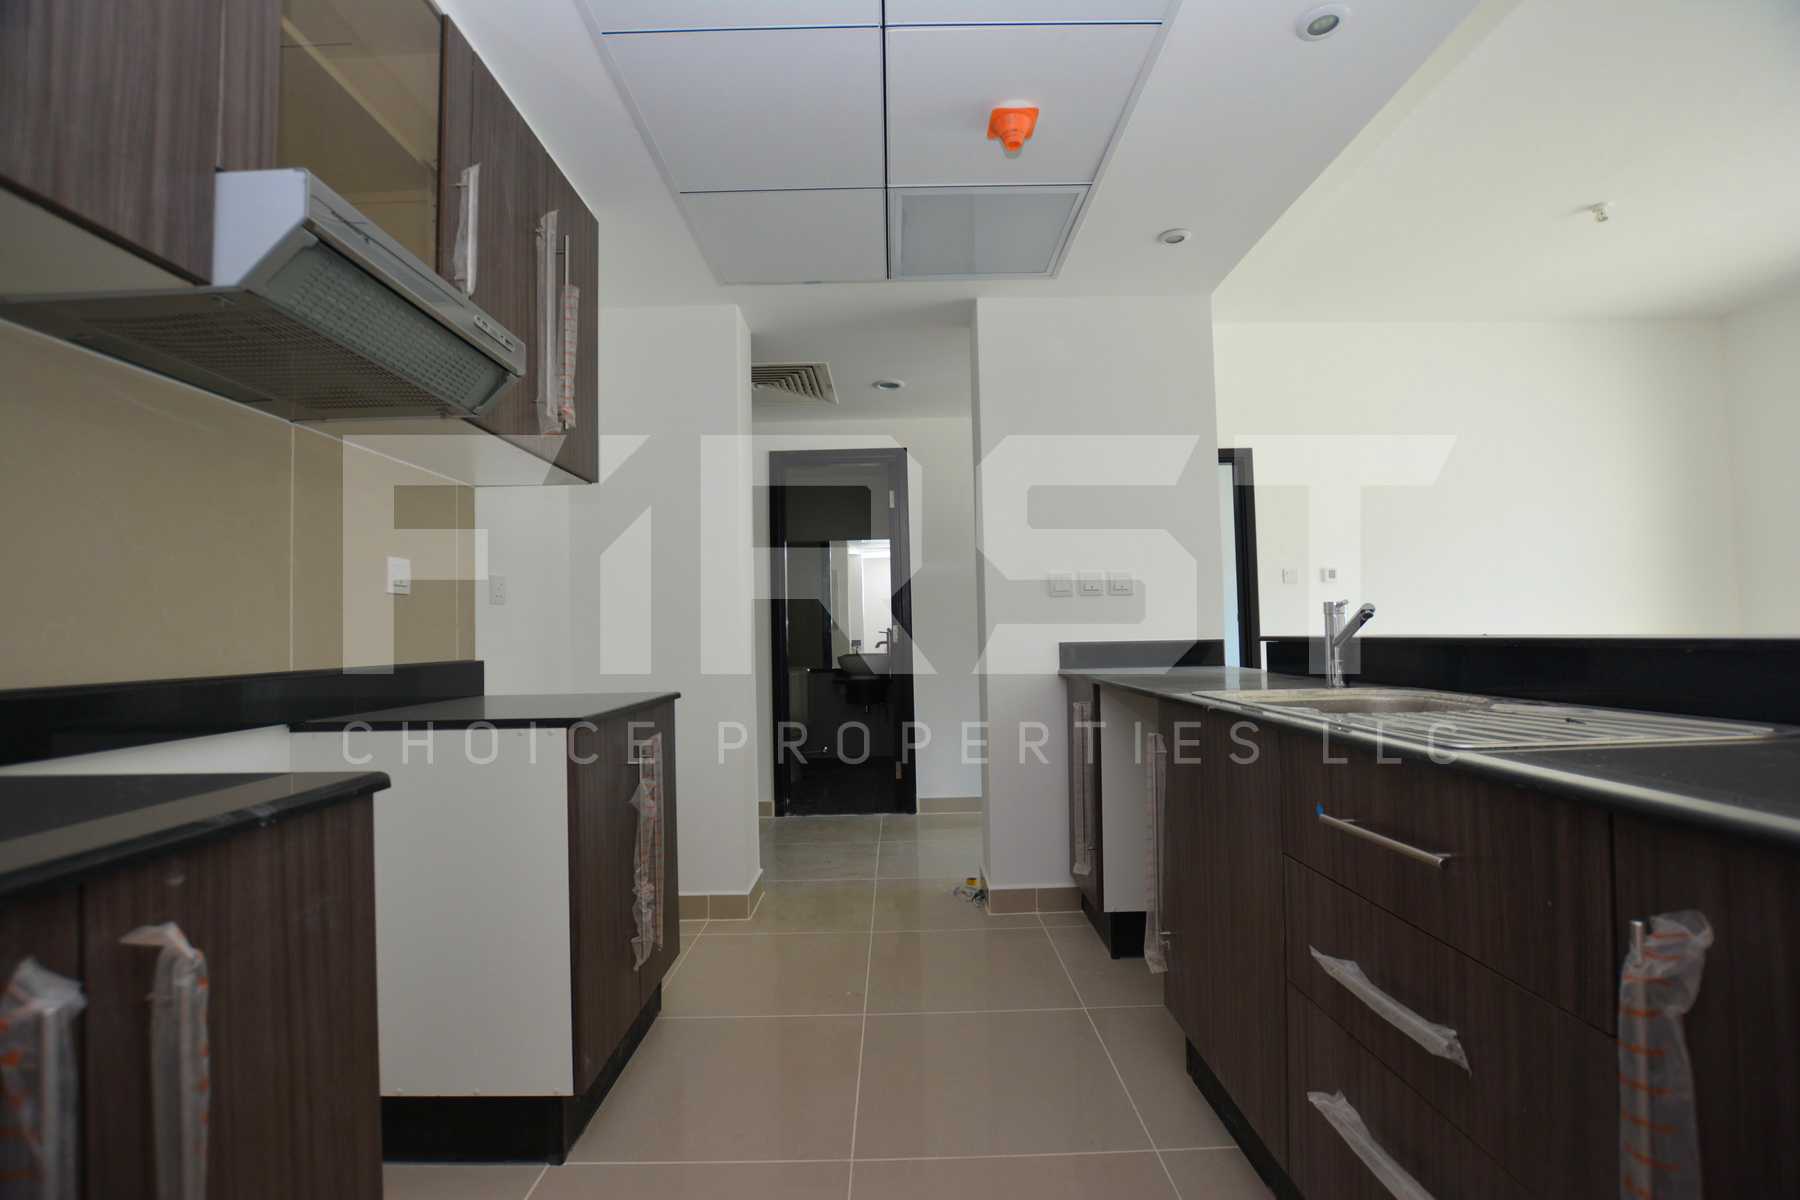 Internal Photo of 1 Bedroom Apartment Type A in Al Reef Downtown Al Reef Abu Dhabi UAE 74 sq.m 796 sq.ft (15).jpg